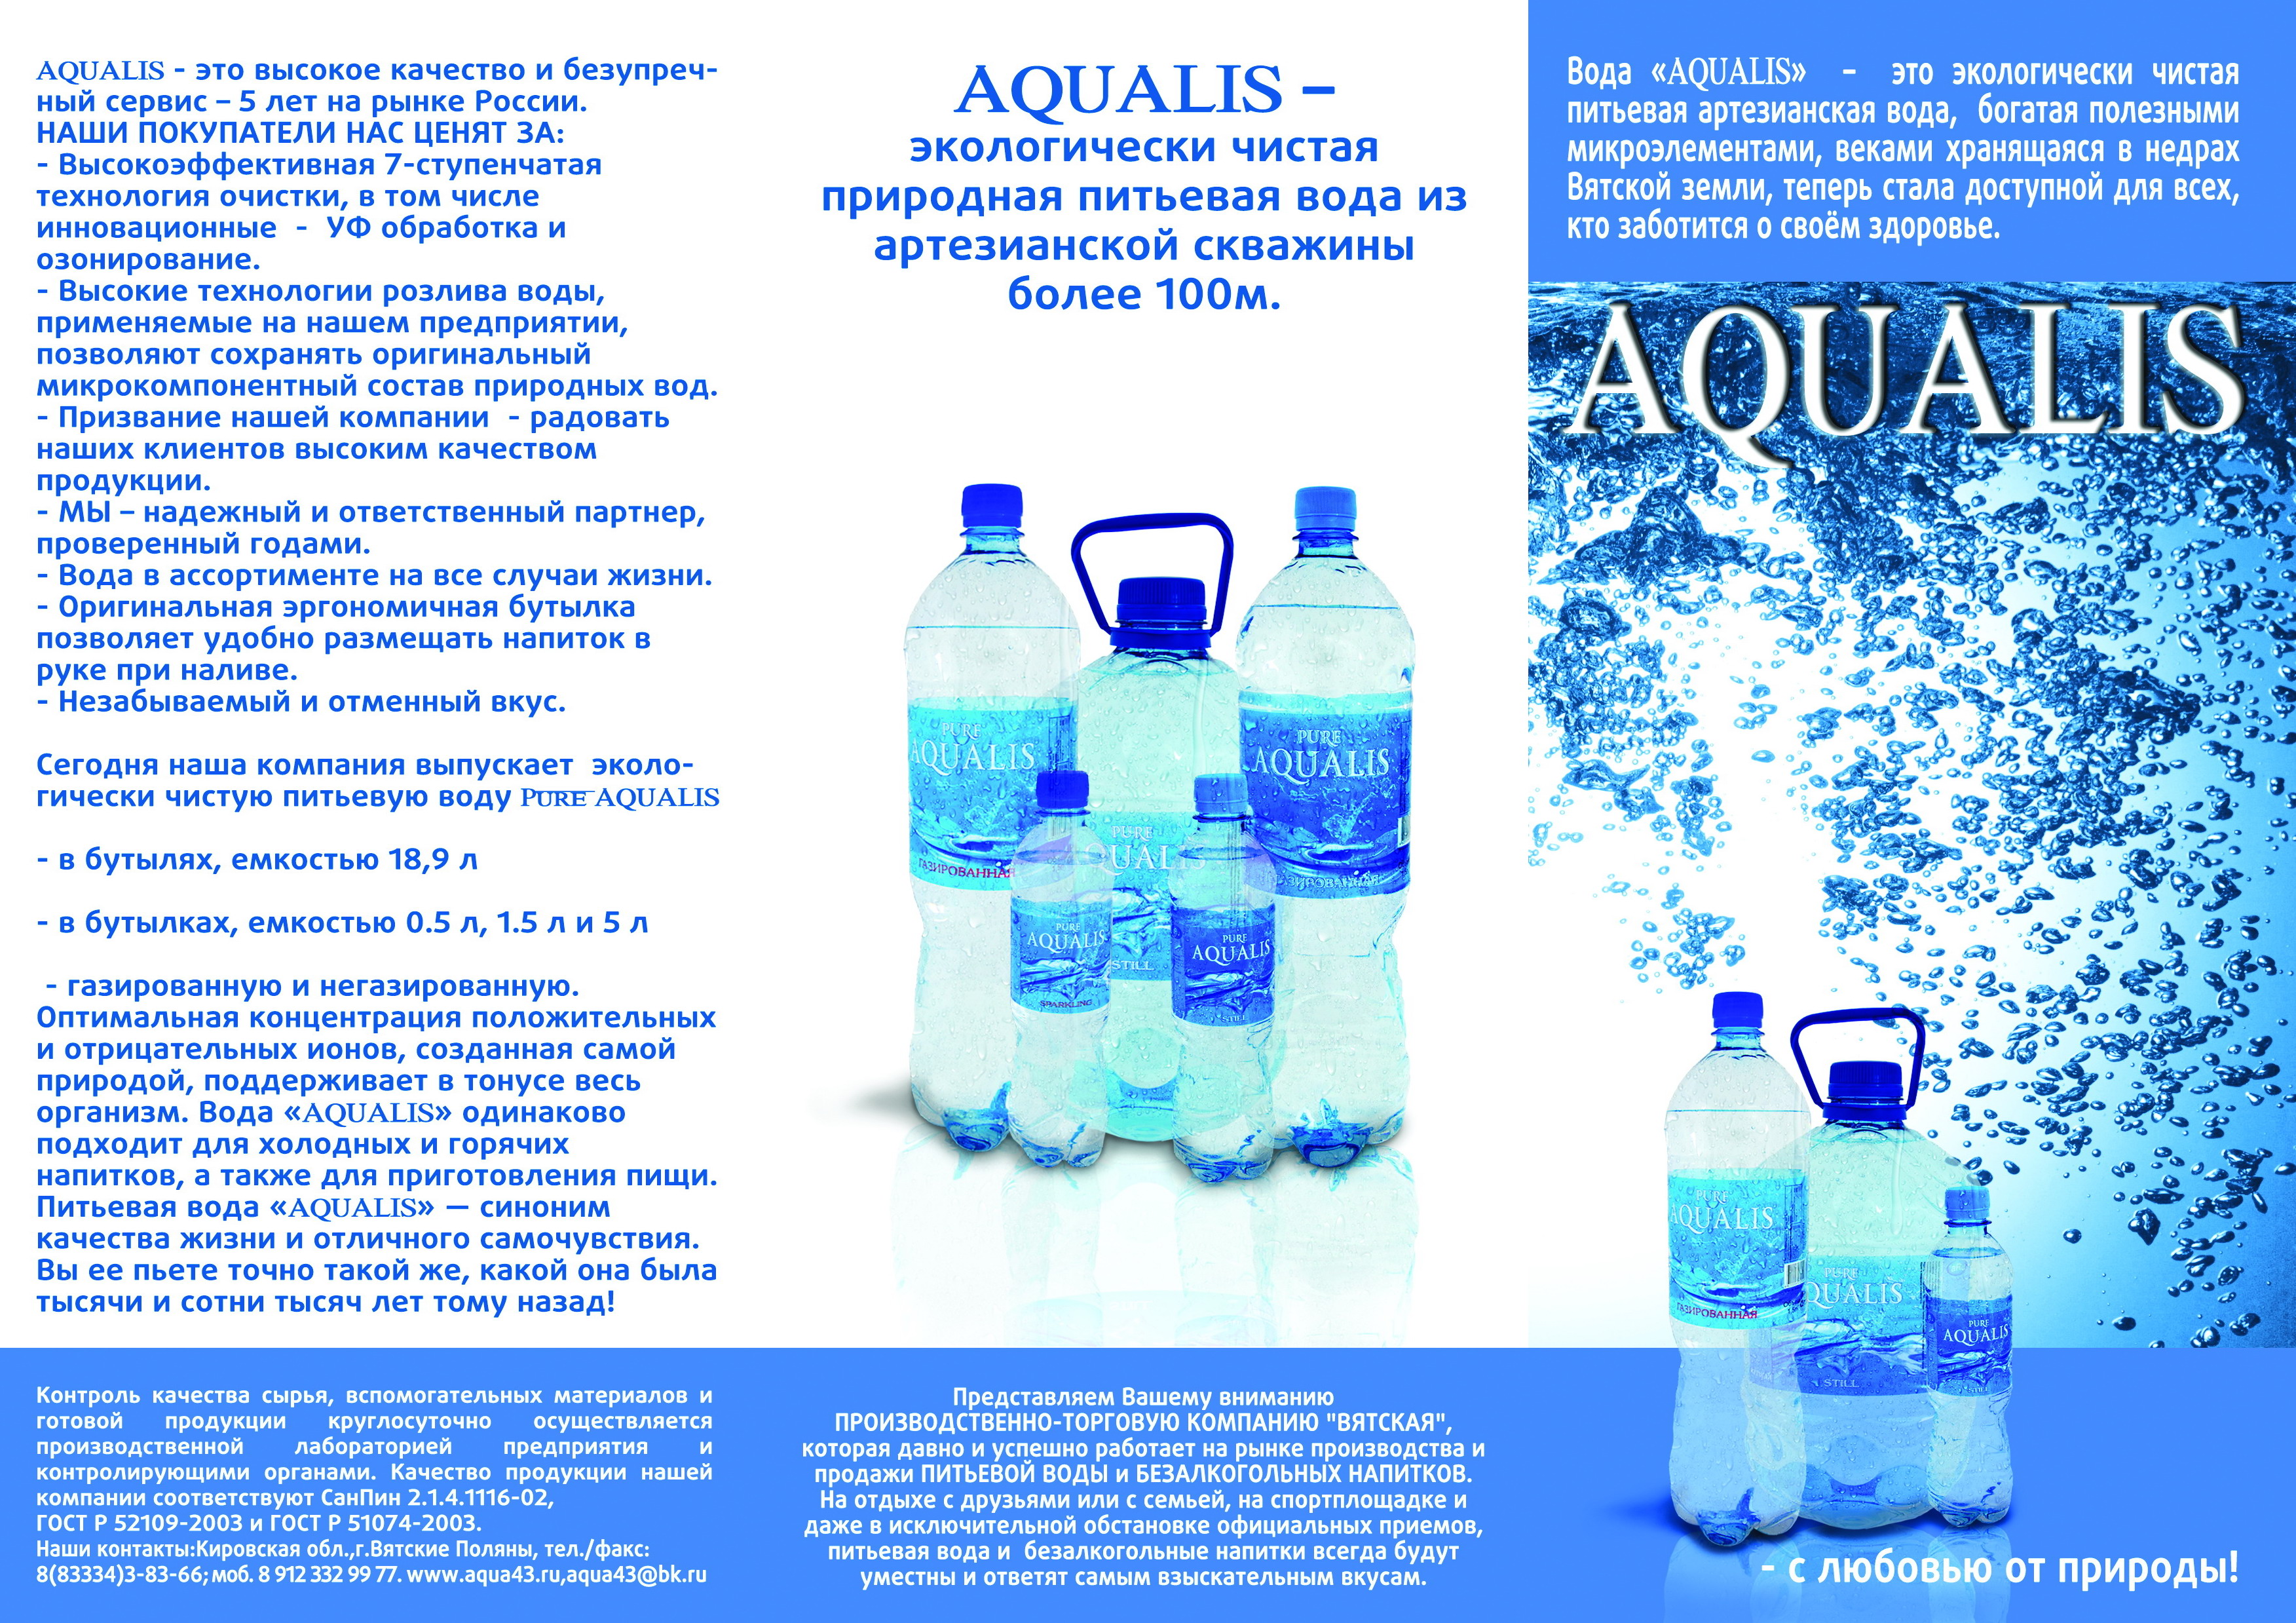 Вода питьевая м3. Вода питьевая артезианская. Артезианская вода реклама. Чистая артезианская вода. Вода артезианская продукция.